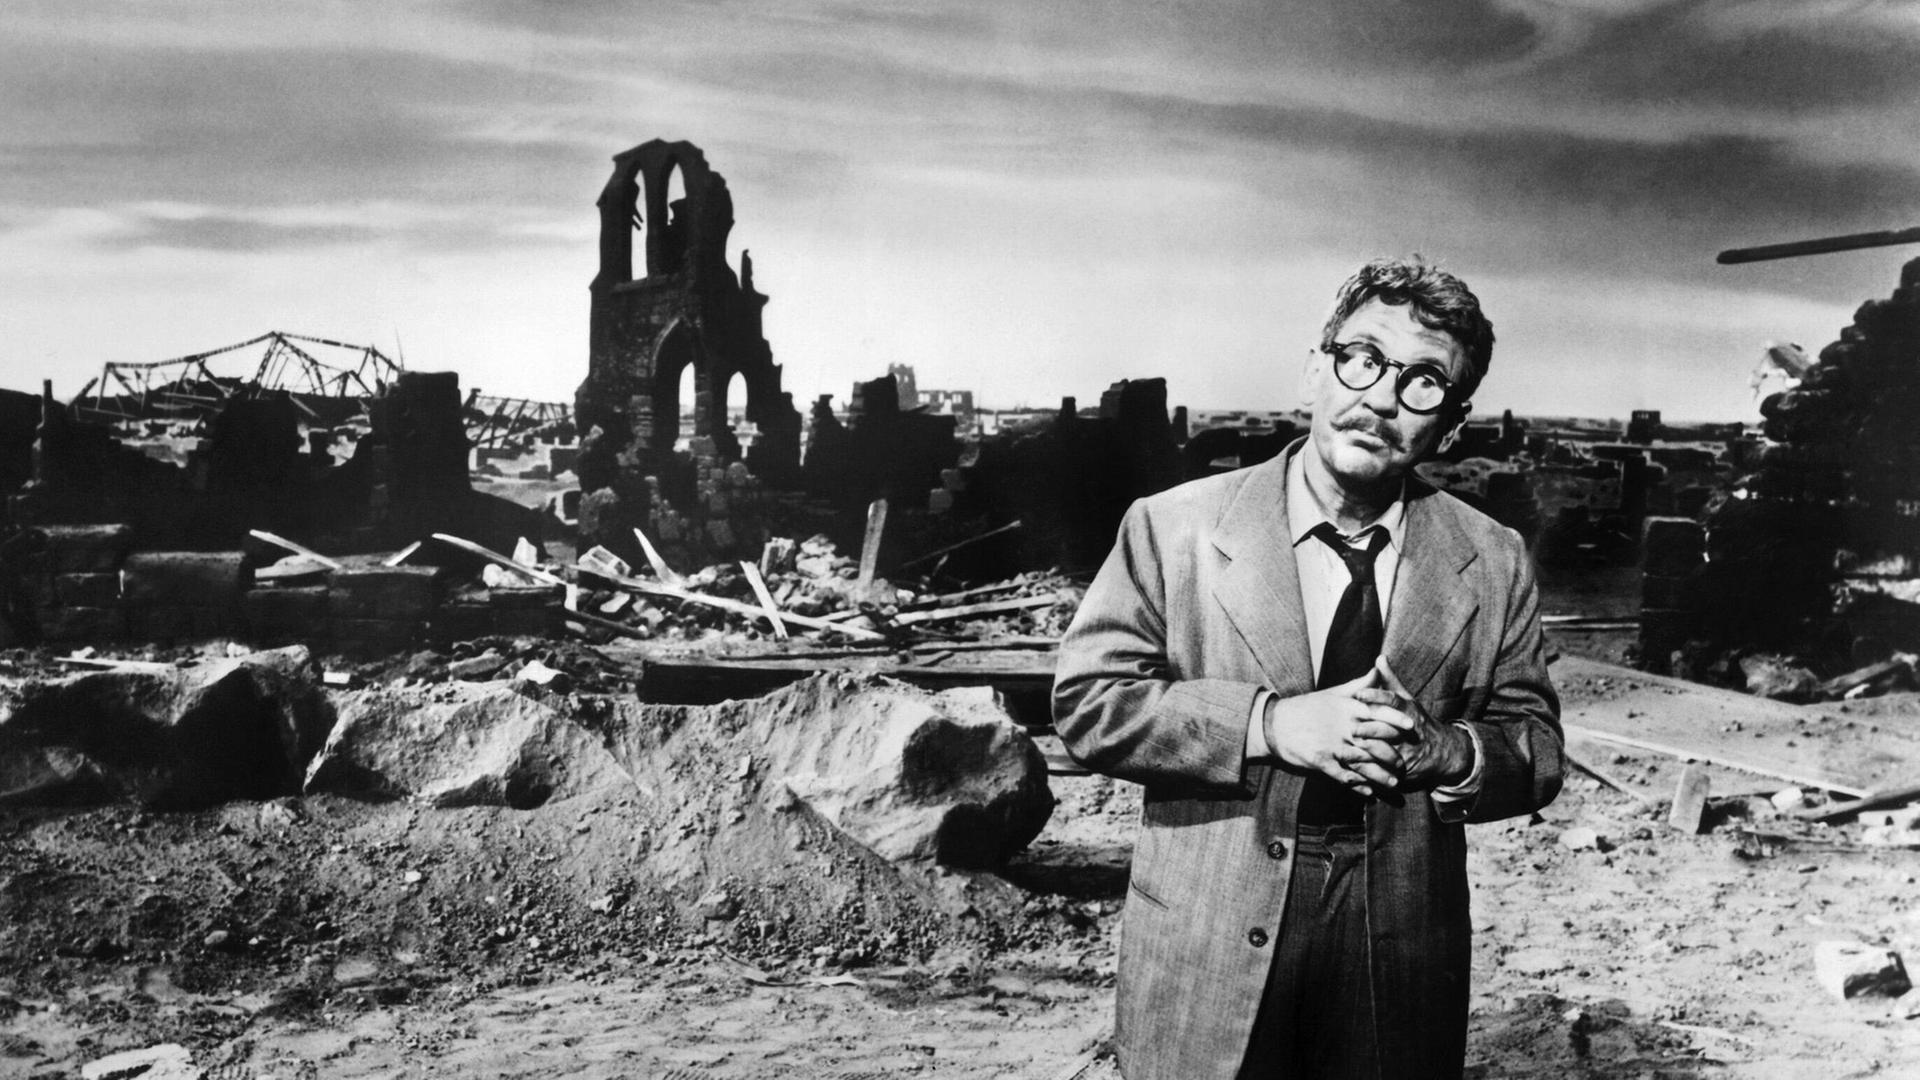 Burgess Meredith in einem postapokalyptischen Szenario der Folge "Time Enough at Last" aus der Serie "The Twilight Zone".